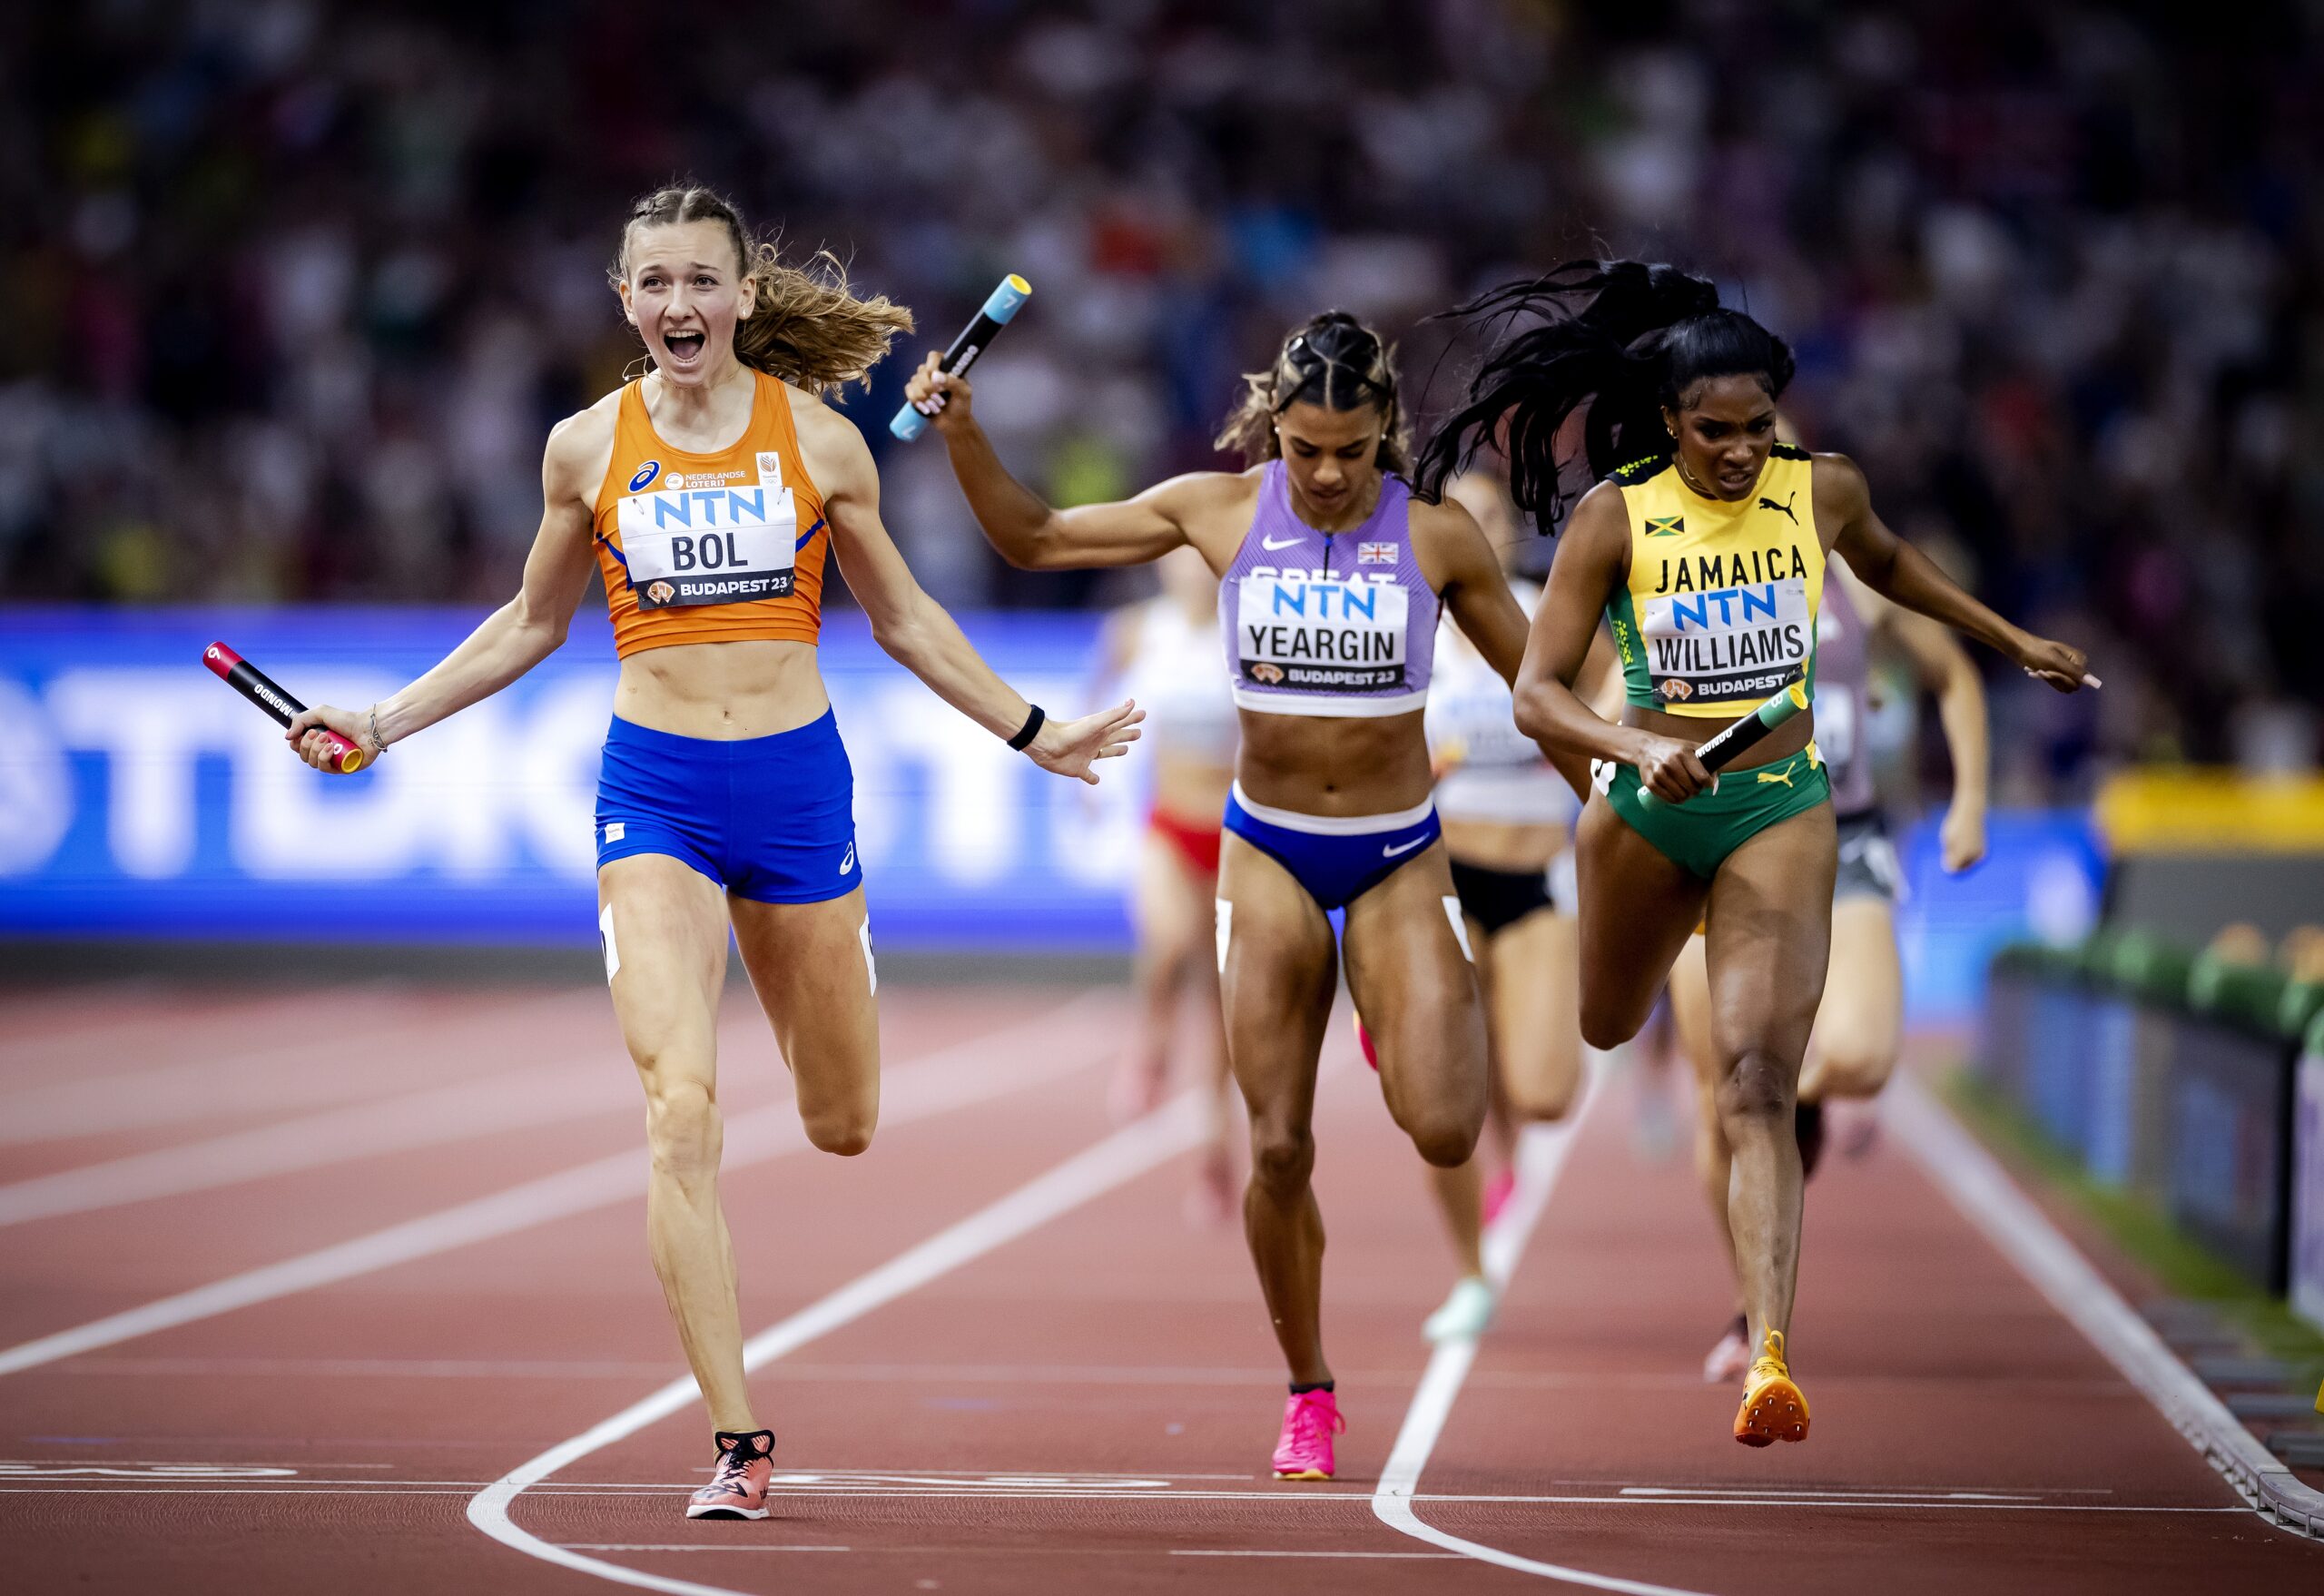 Golden girls: Dutch women win 4x400 metres world title - DutchNews.nl